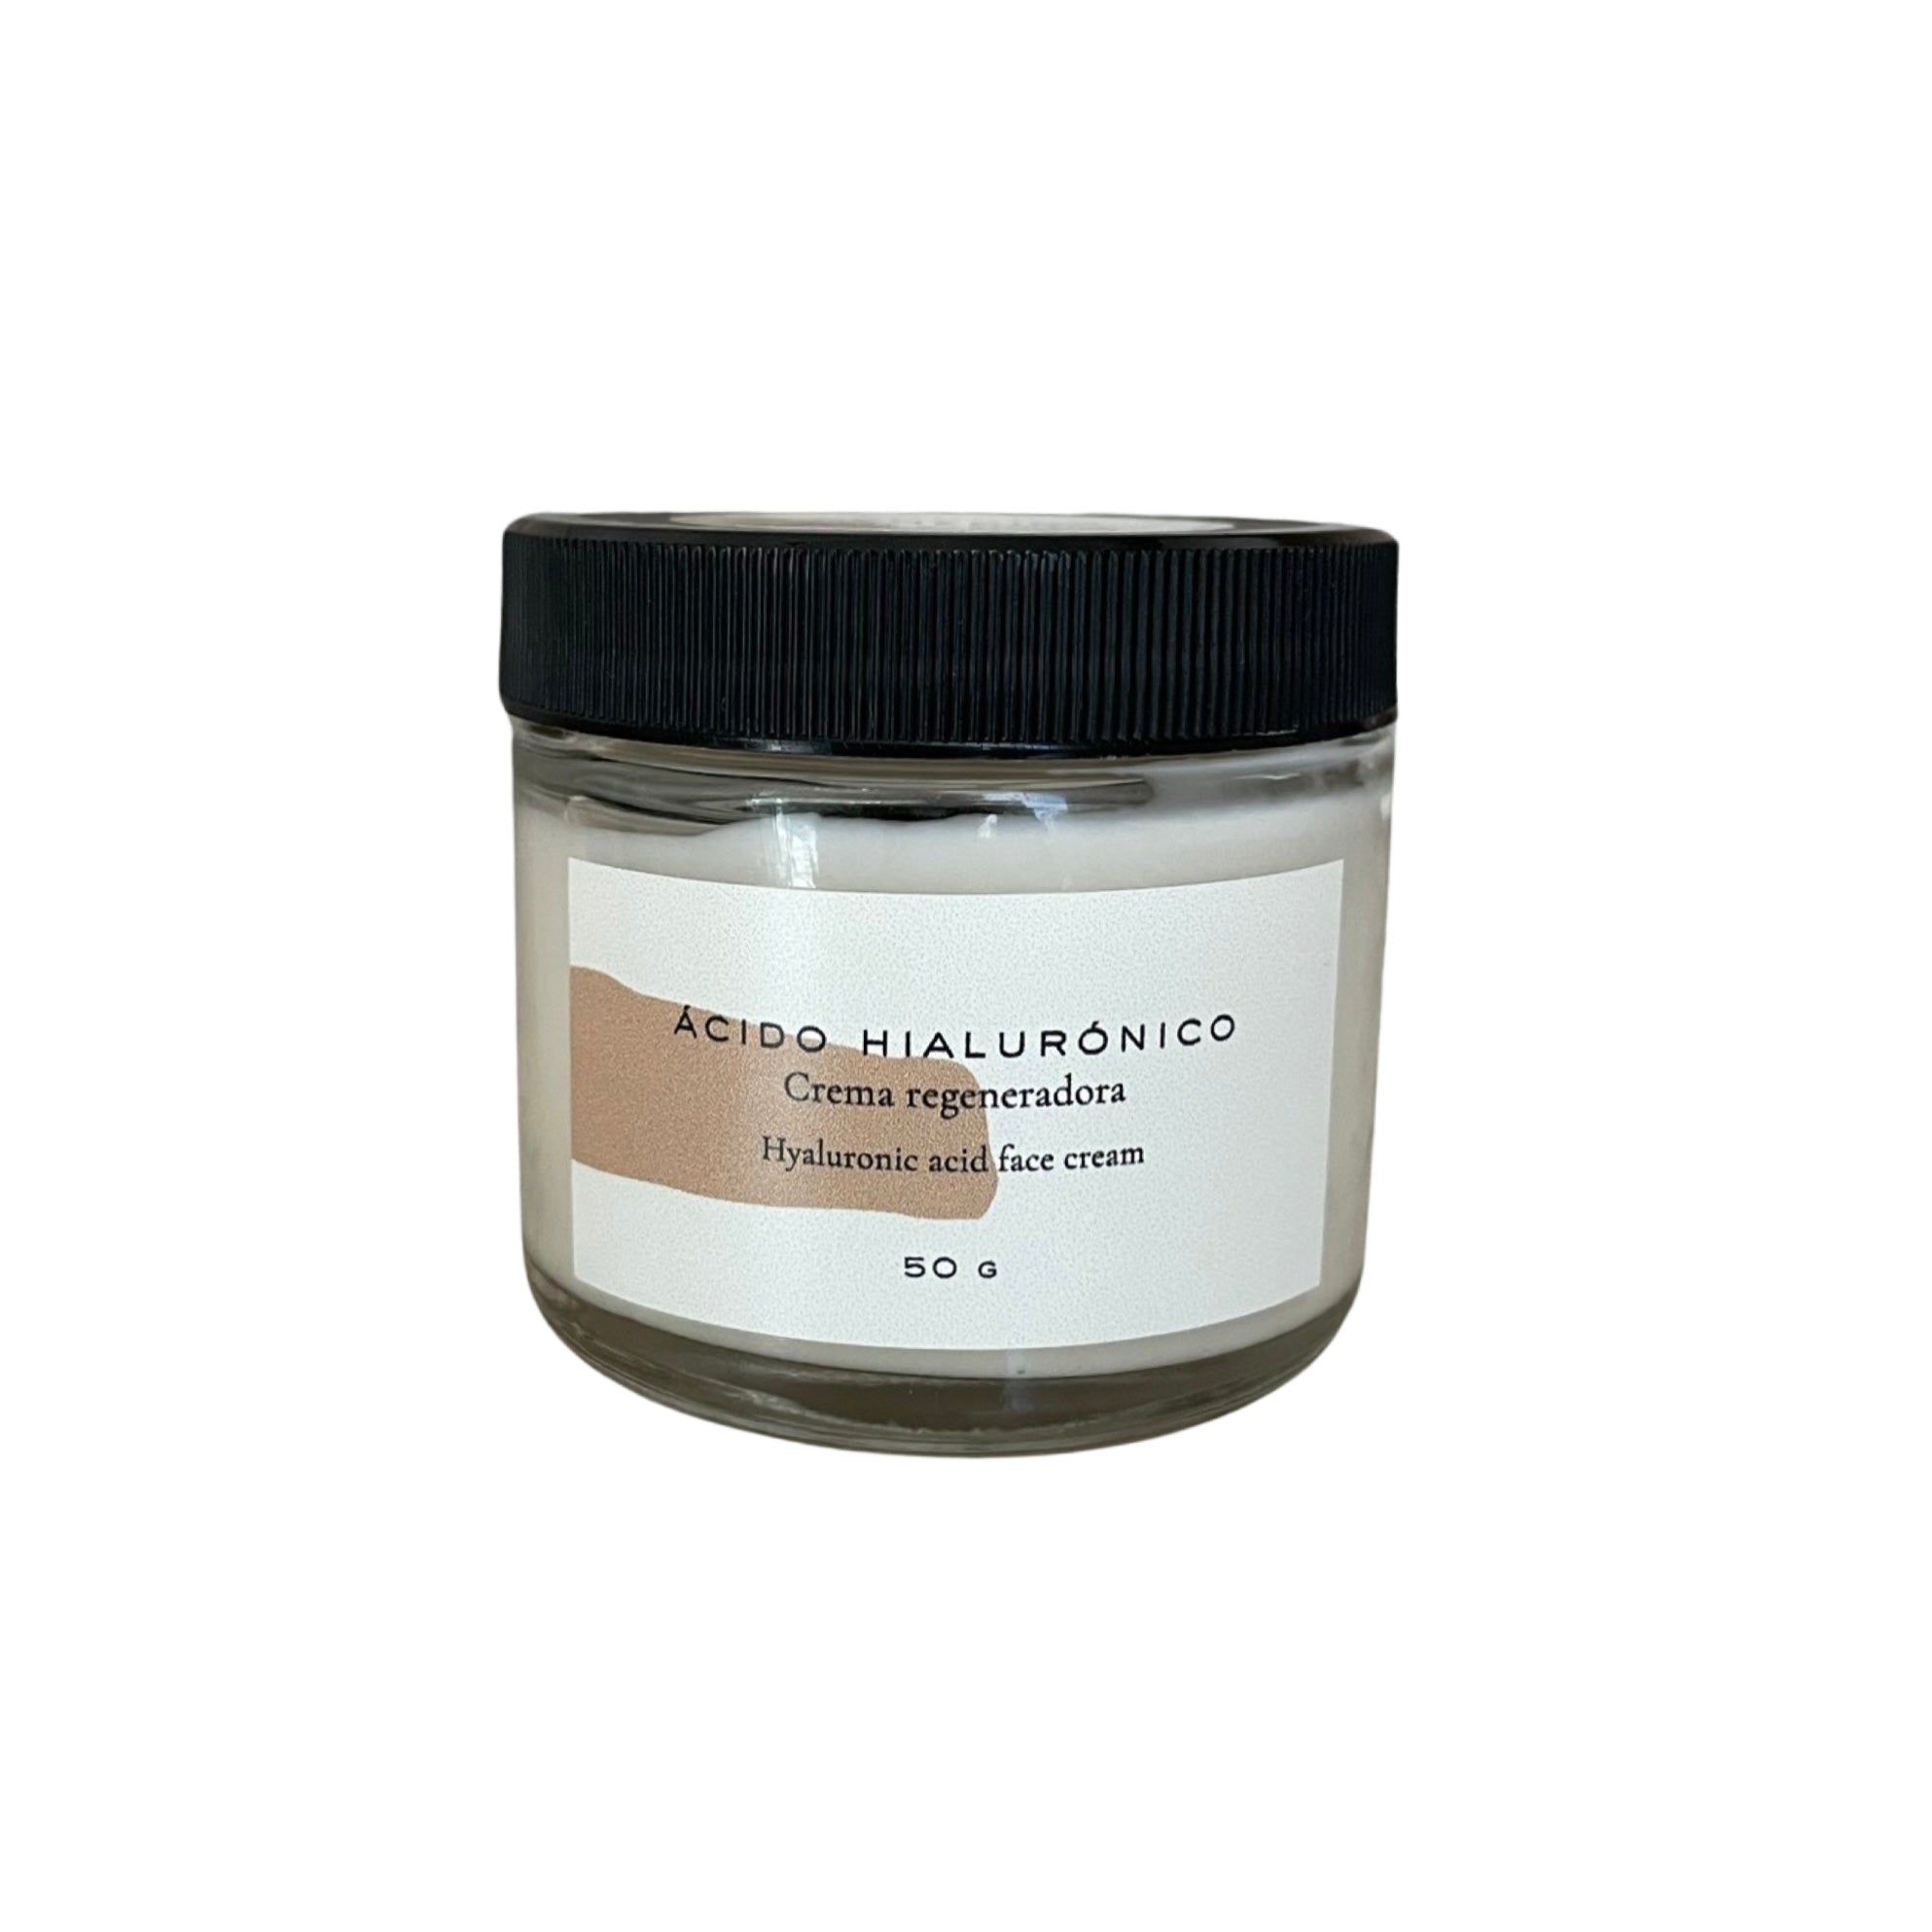 Crema regeneradora - Ácido hialurónico BIO